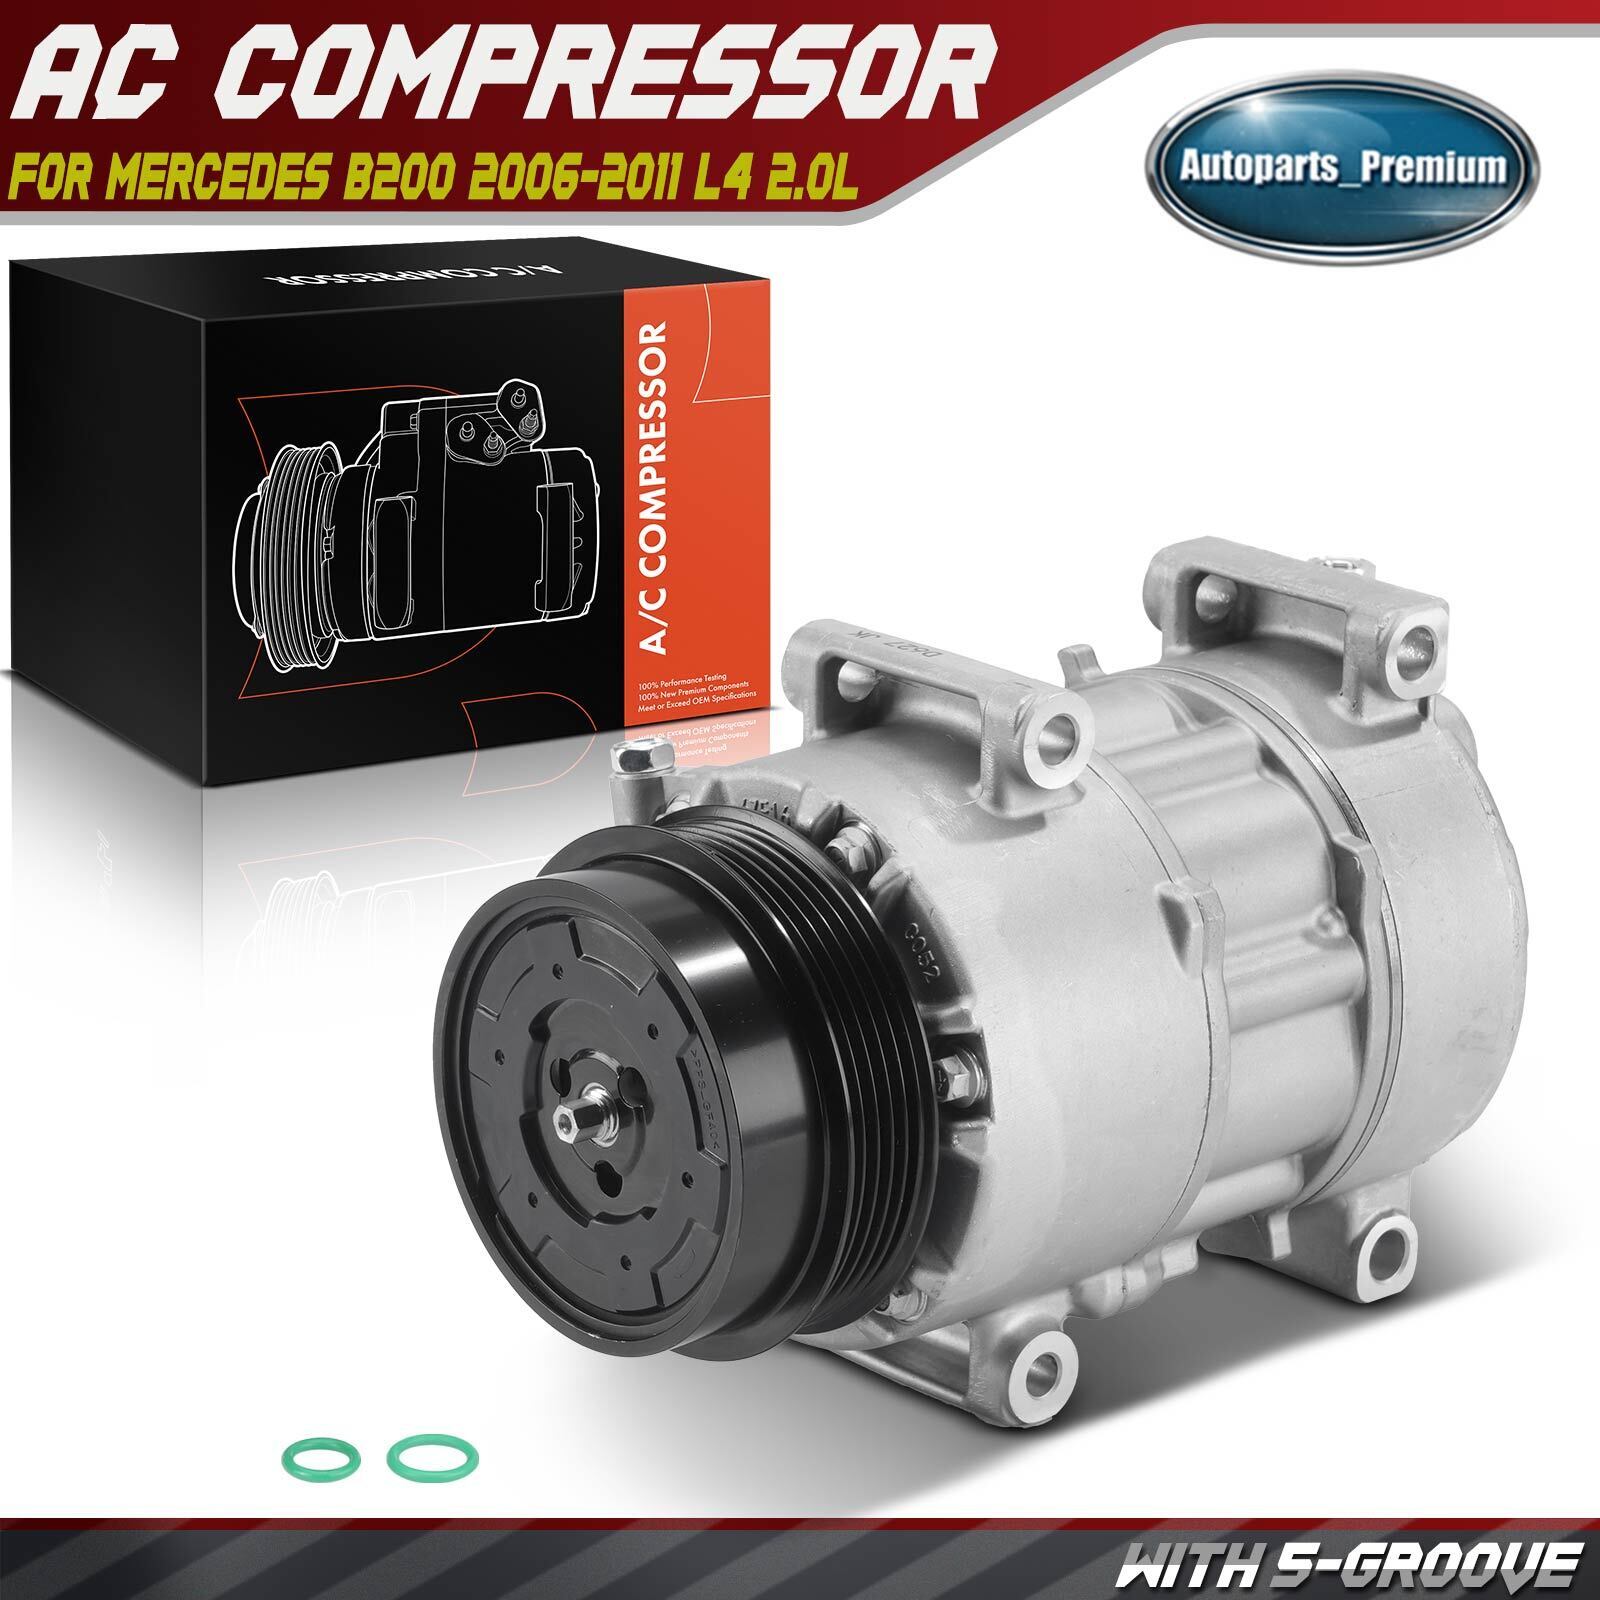 New AC A/C Compressor for Mercedes B200 2006 2007 2008 2009-2011 L4 2.0L 6SEU16C